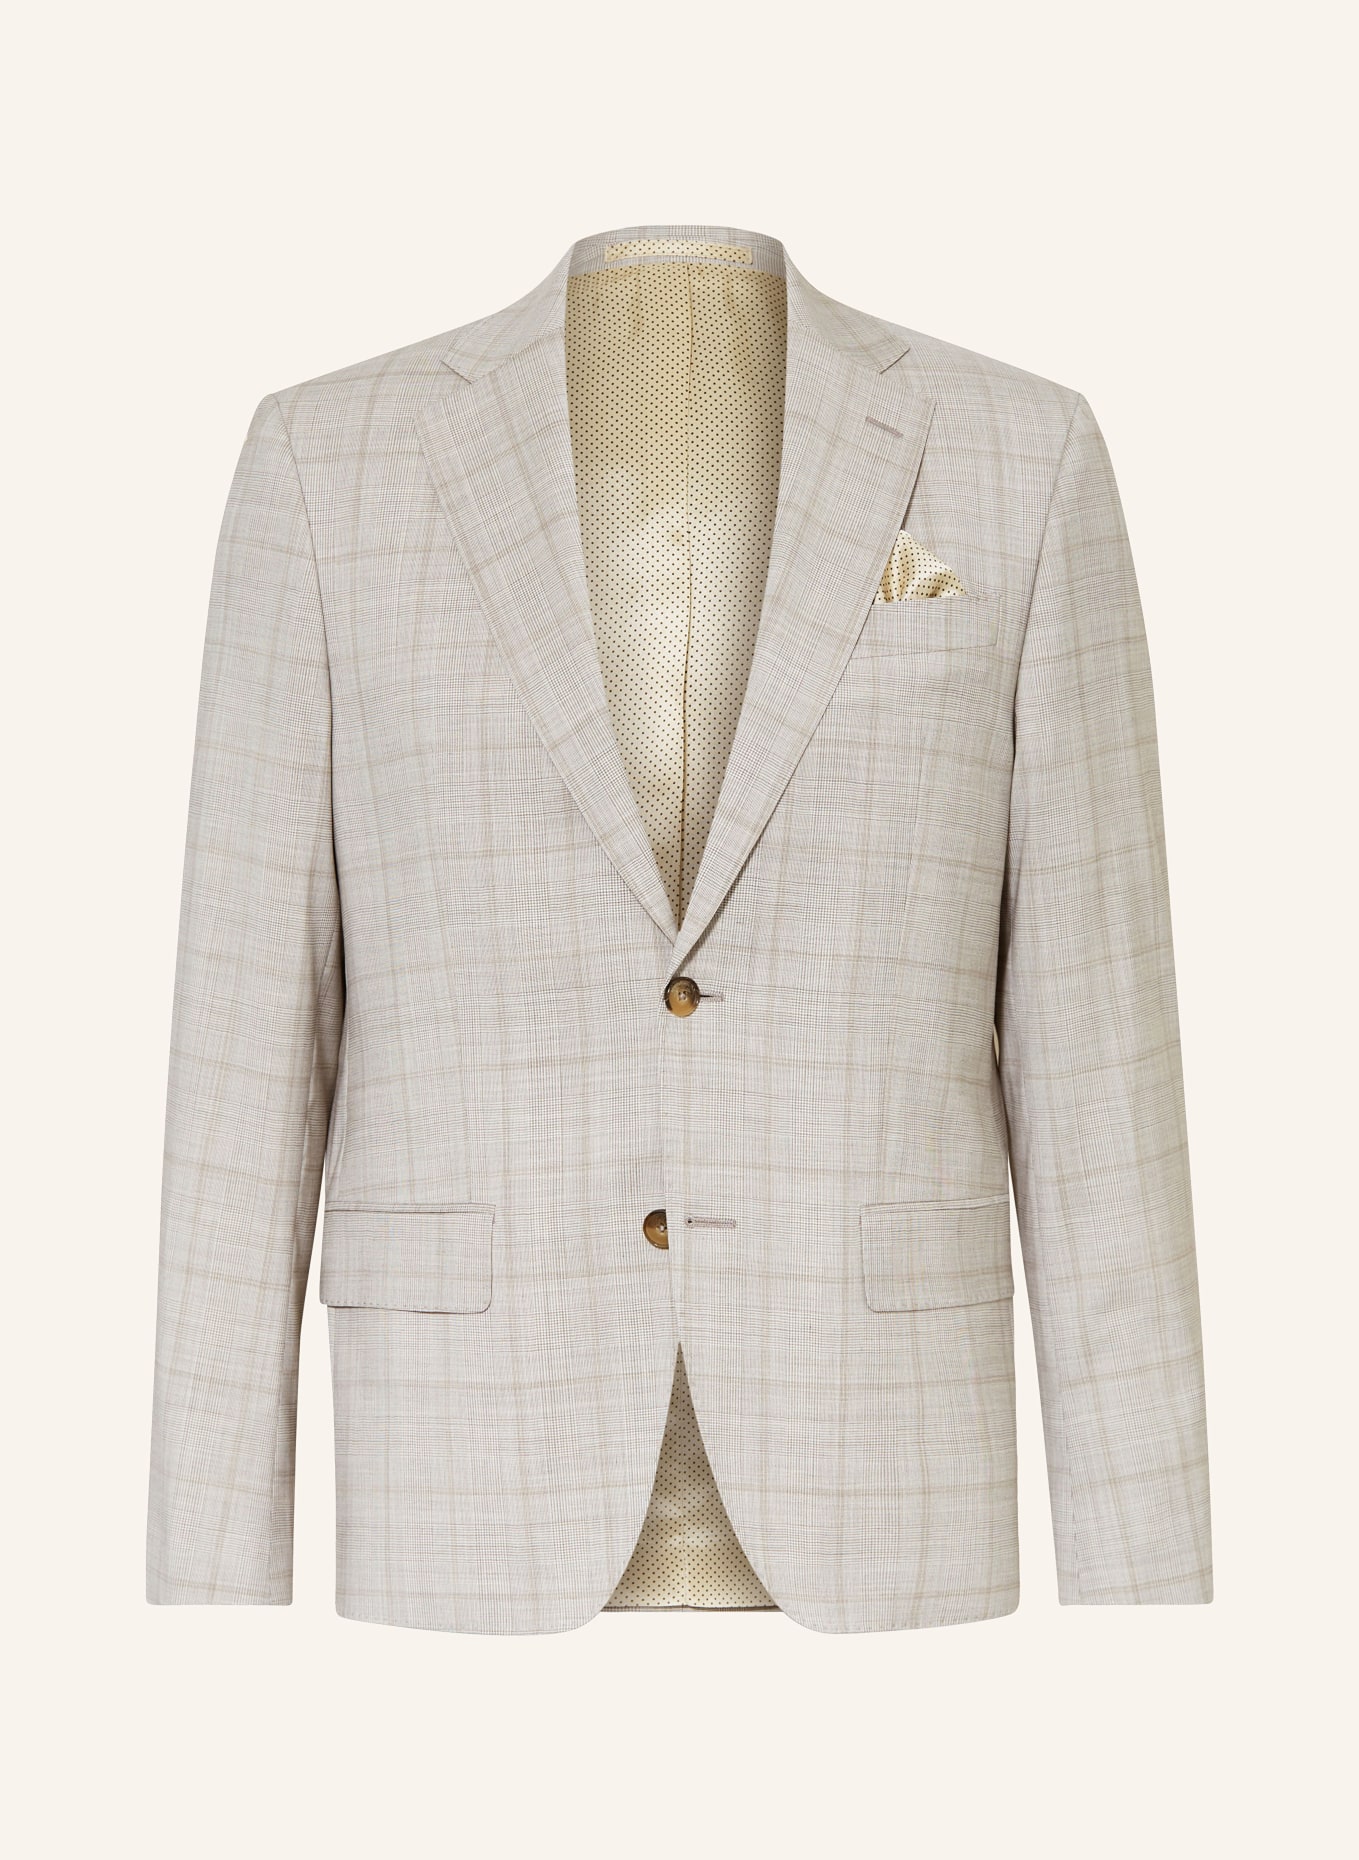 SAND COPENHAGEN Suit jacket SHERMAN NAPOLI classic fit, Color: 220 hellbeige (Image 1)